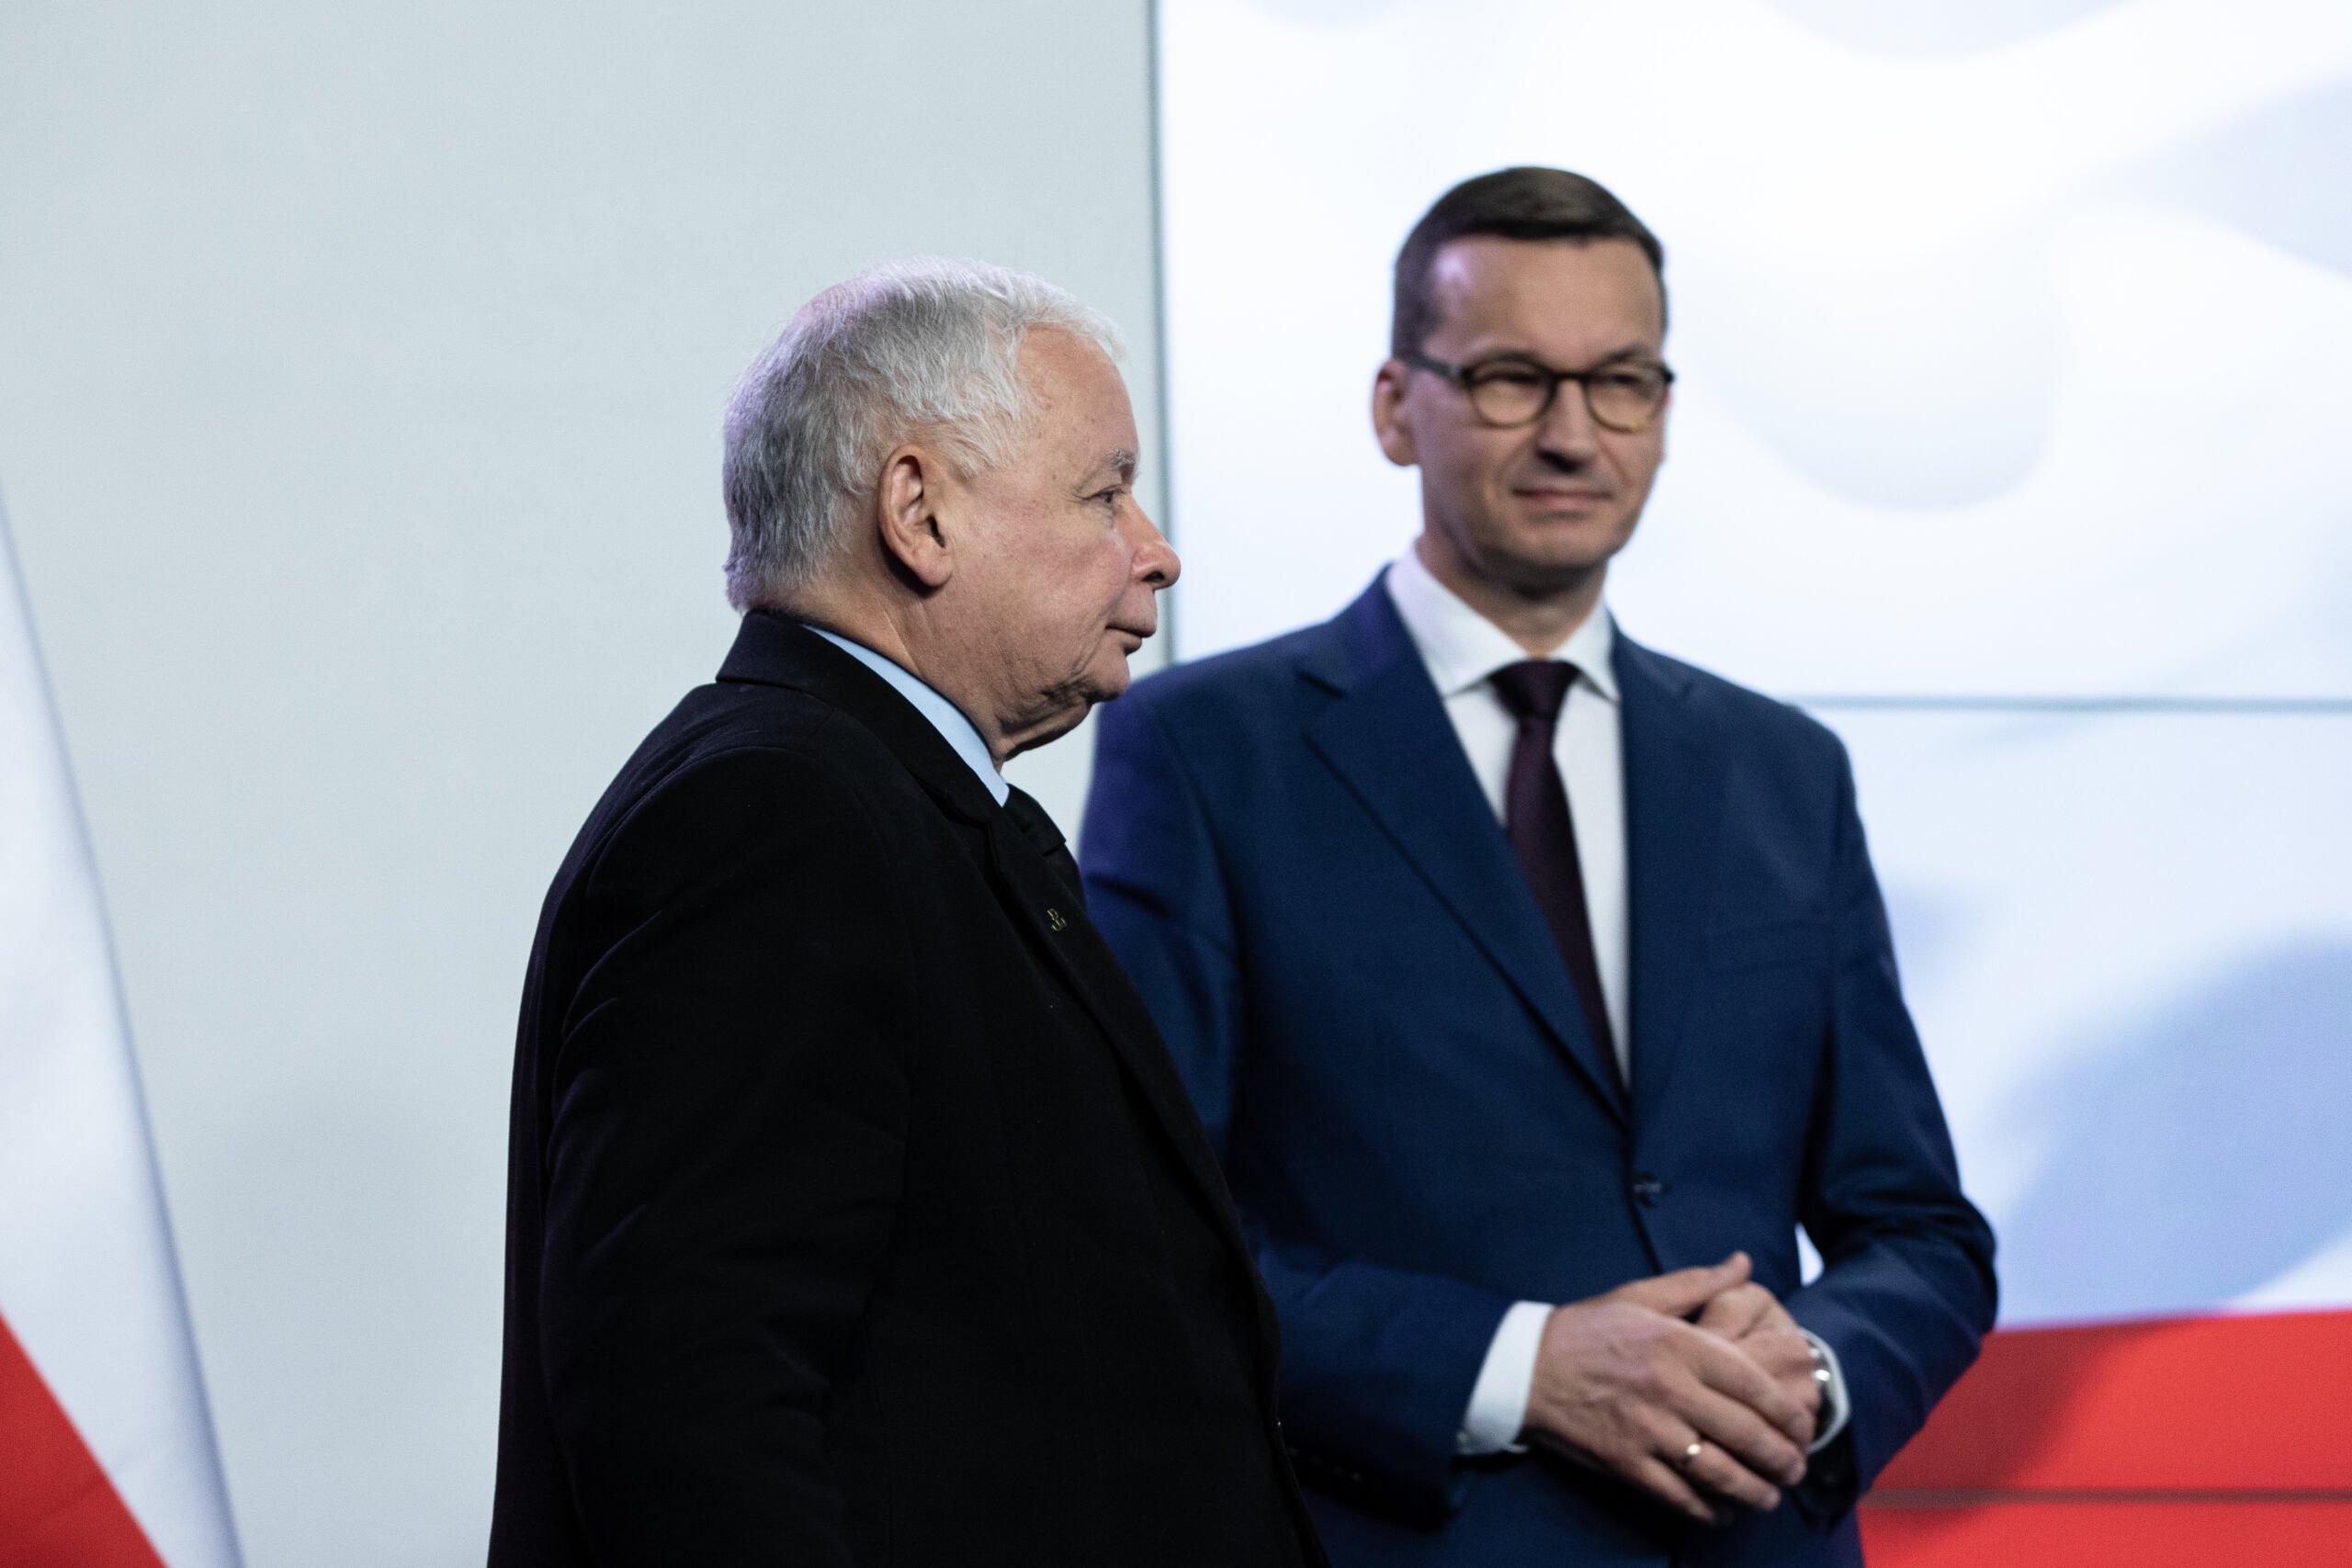 Jarosław Kaczyński i Mateusz Morawiecki na konferencji prasowej